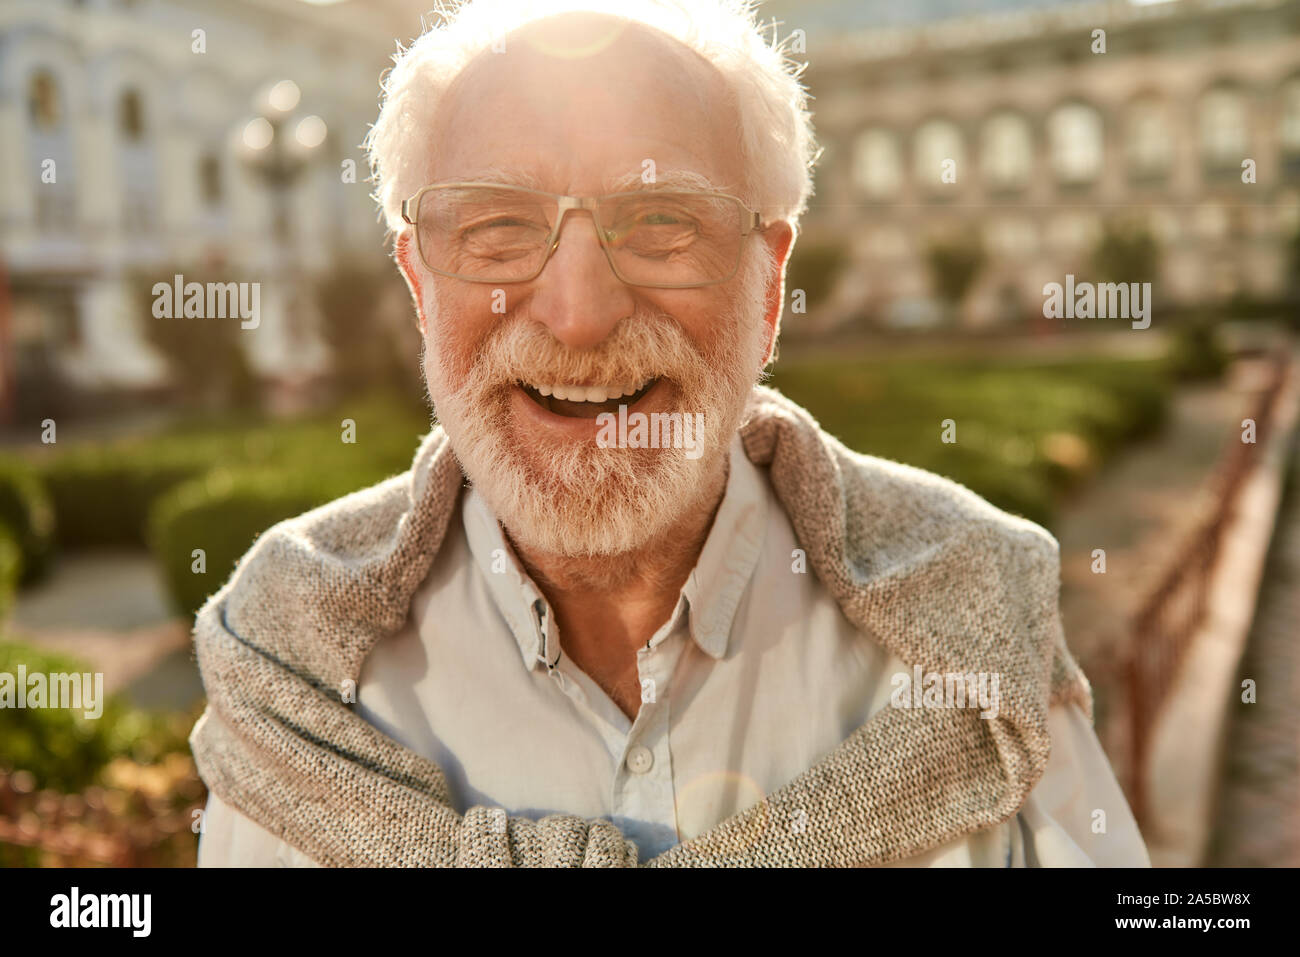 Età è solo un numero. Ritratto di felice e bello uomo senior in bicchieri guardando la fotocamera e sorridere mentre in piedi all'aperto in una giornata di sole Foto Stock